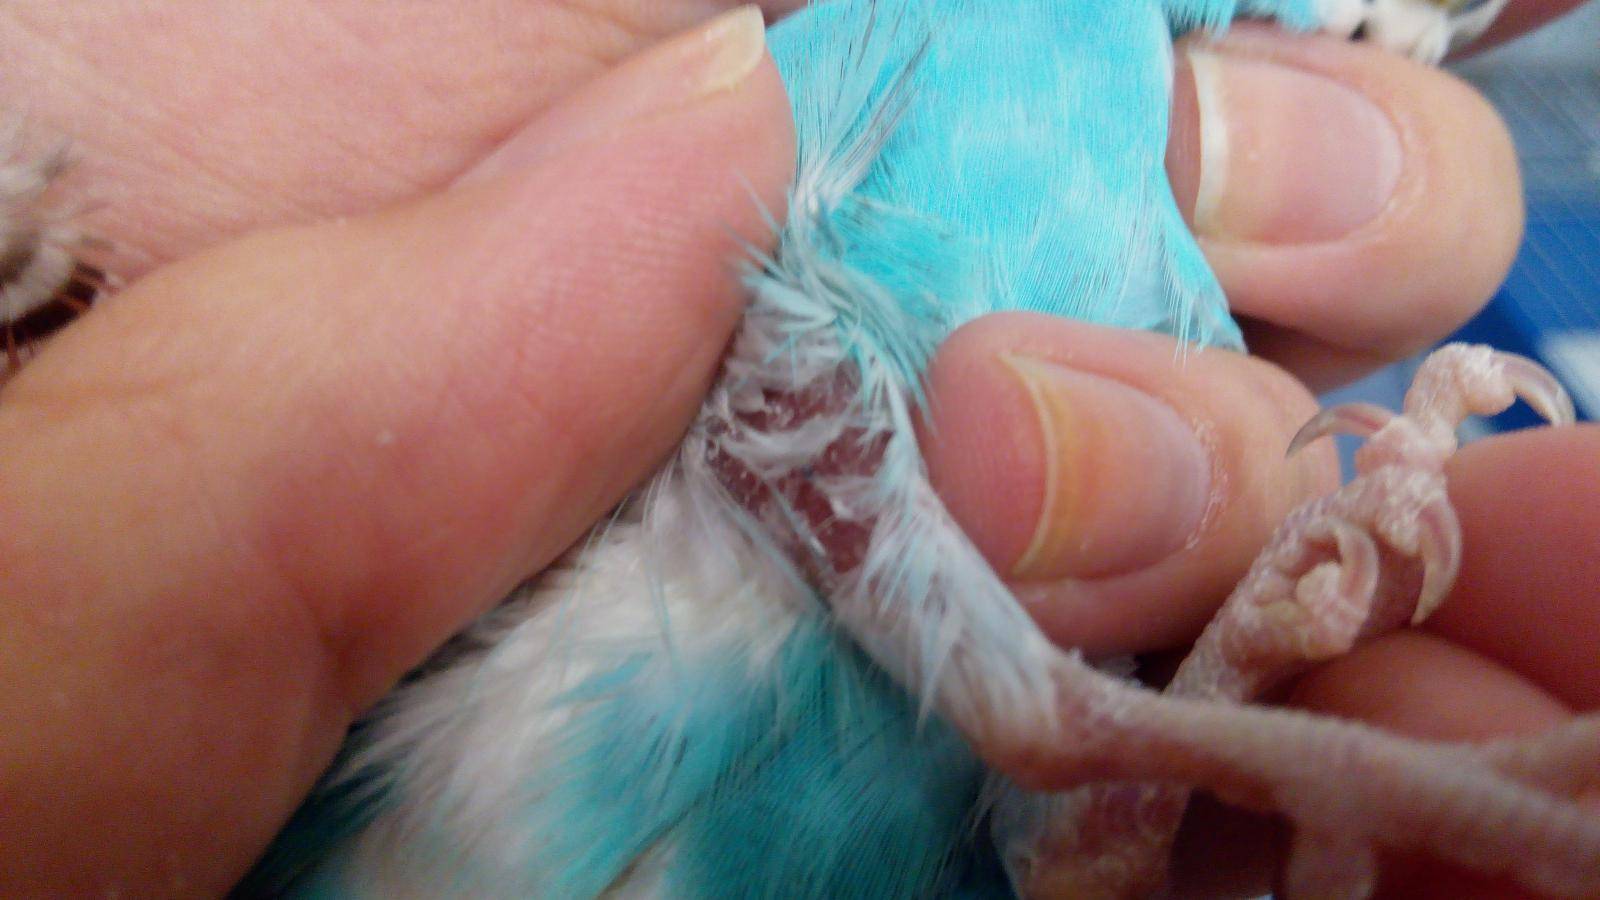 Как определить болезнь попугая — советы врача орнитолога